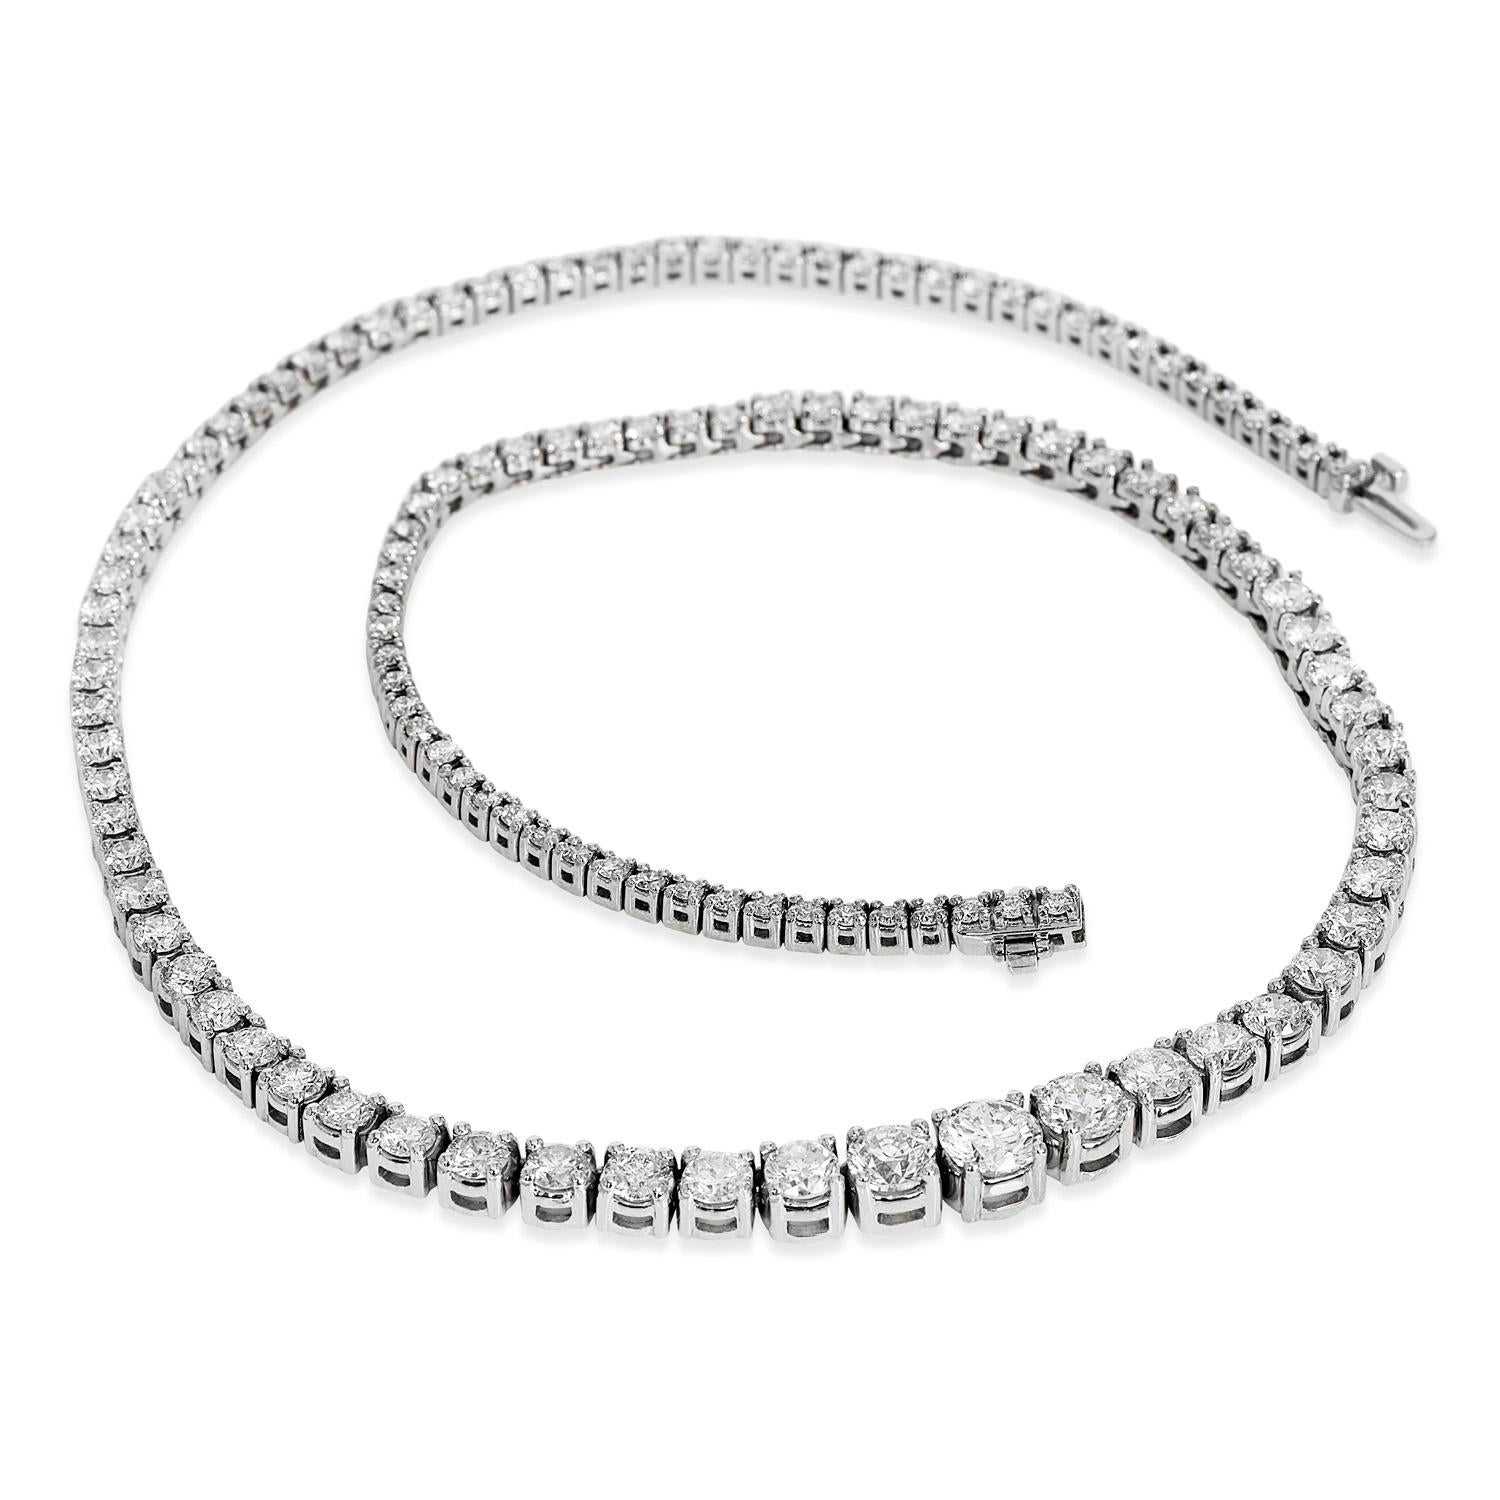  Feal se sent comme une célébrité avec glamour et élégance grâce à ce collier de tennis gradué à diamants de 17,50 carats de style Riviera ! 

Les diamants étincelants varient de 1,00 carat à 0,05 carat. Les éblouissants diamants gradués s'alignent